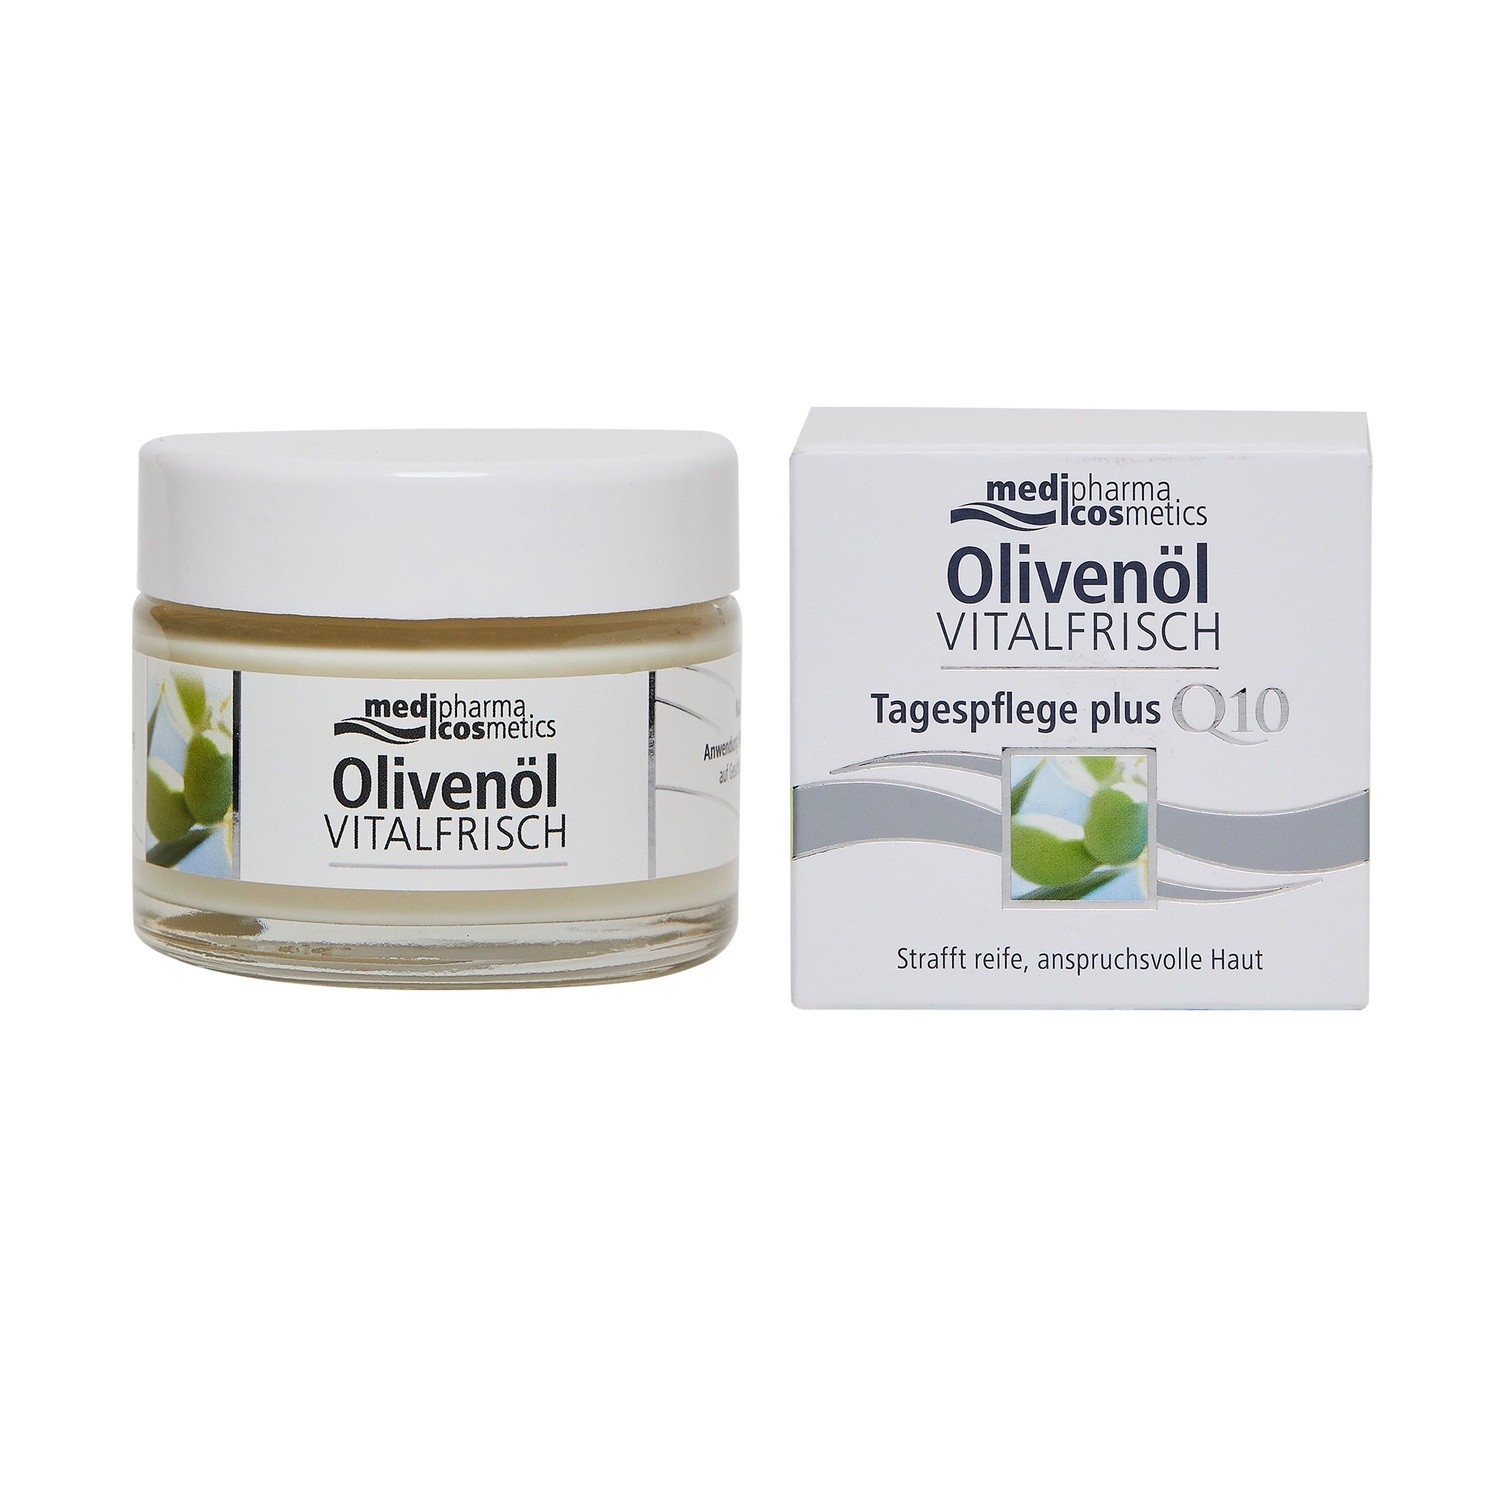 Купить Medipharma Cosmetics Дневной крем для лица против морщин Olivenol Vitalfrisch, 50 мл (Medipharma Cosmetics, Olivenol), Германия